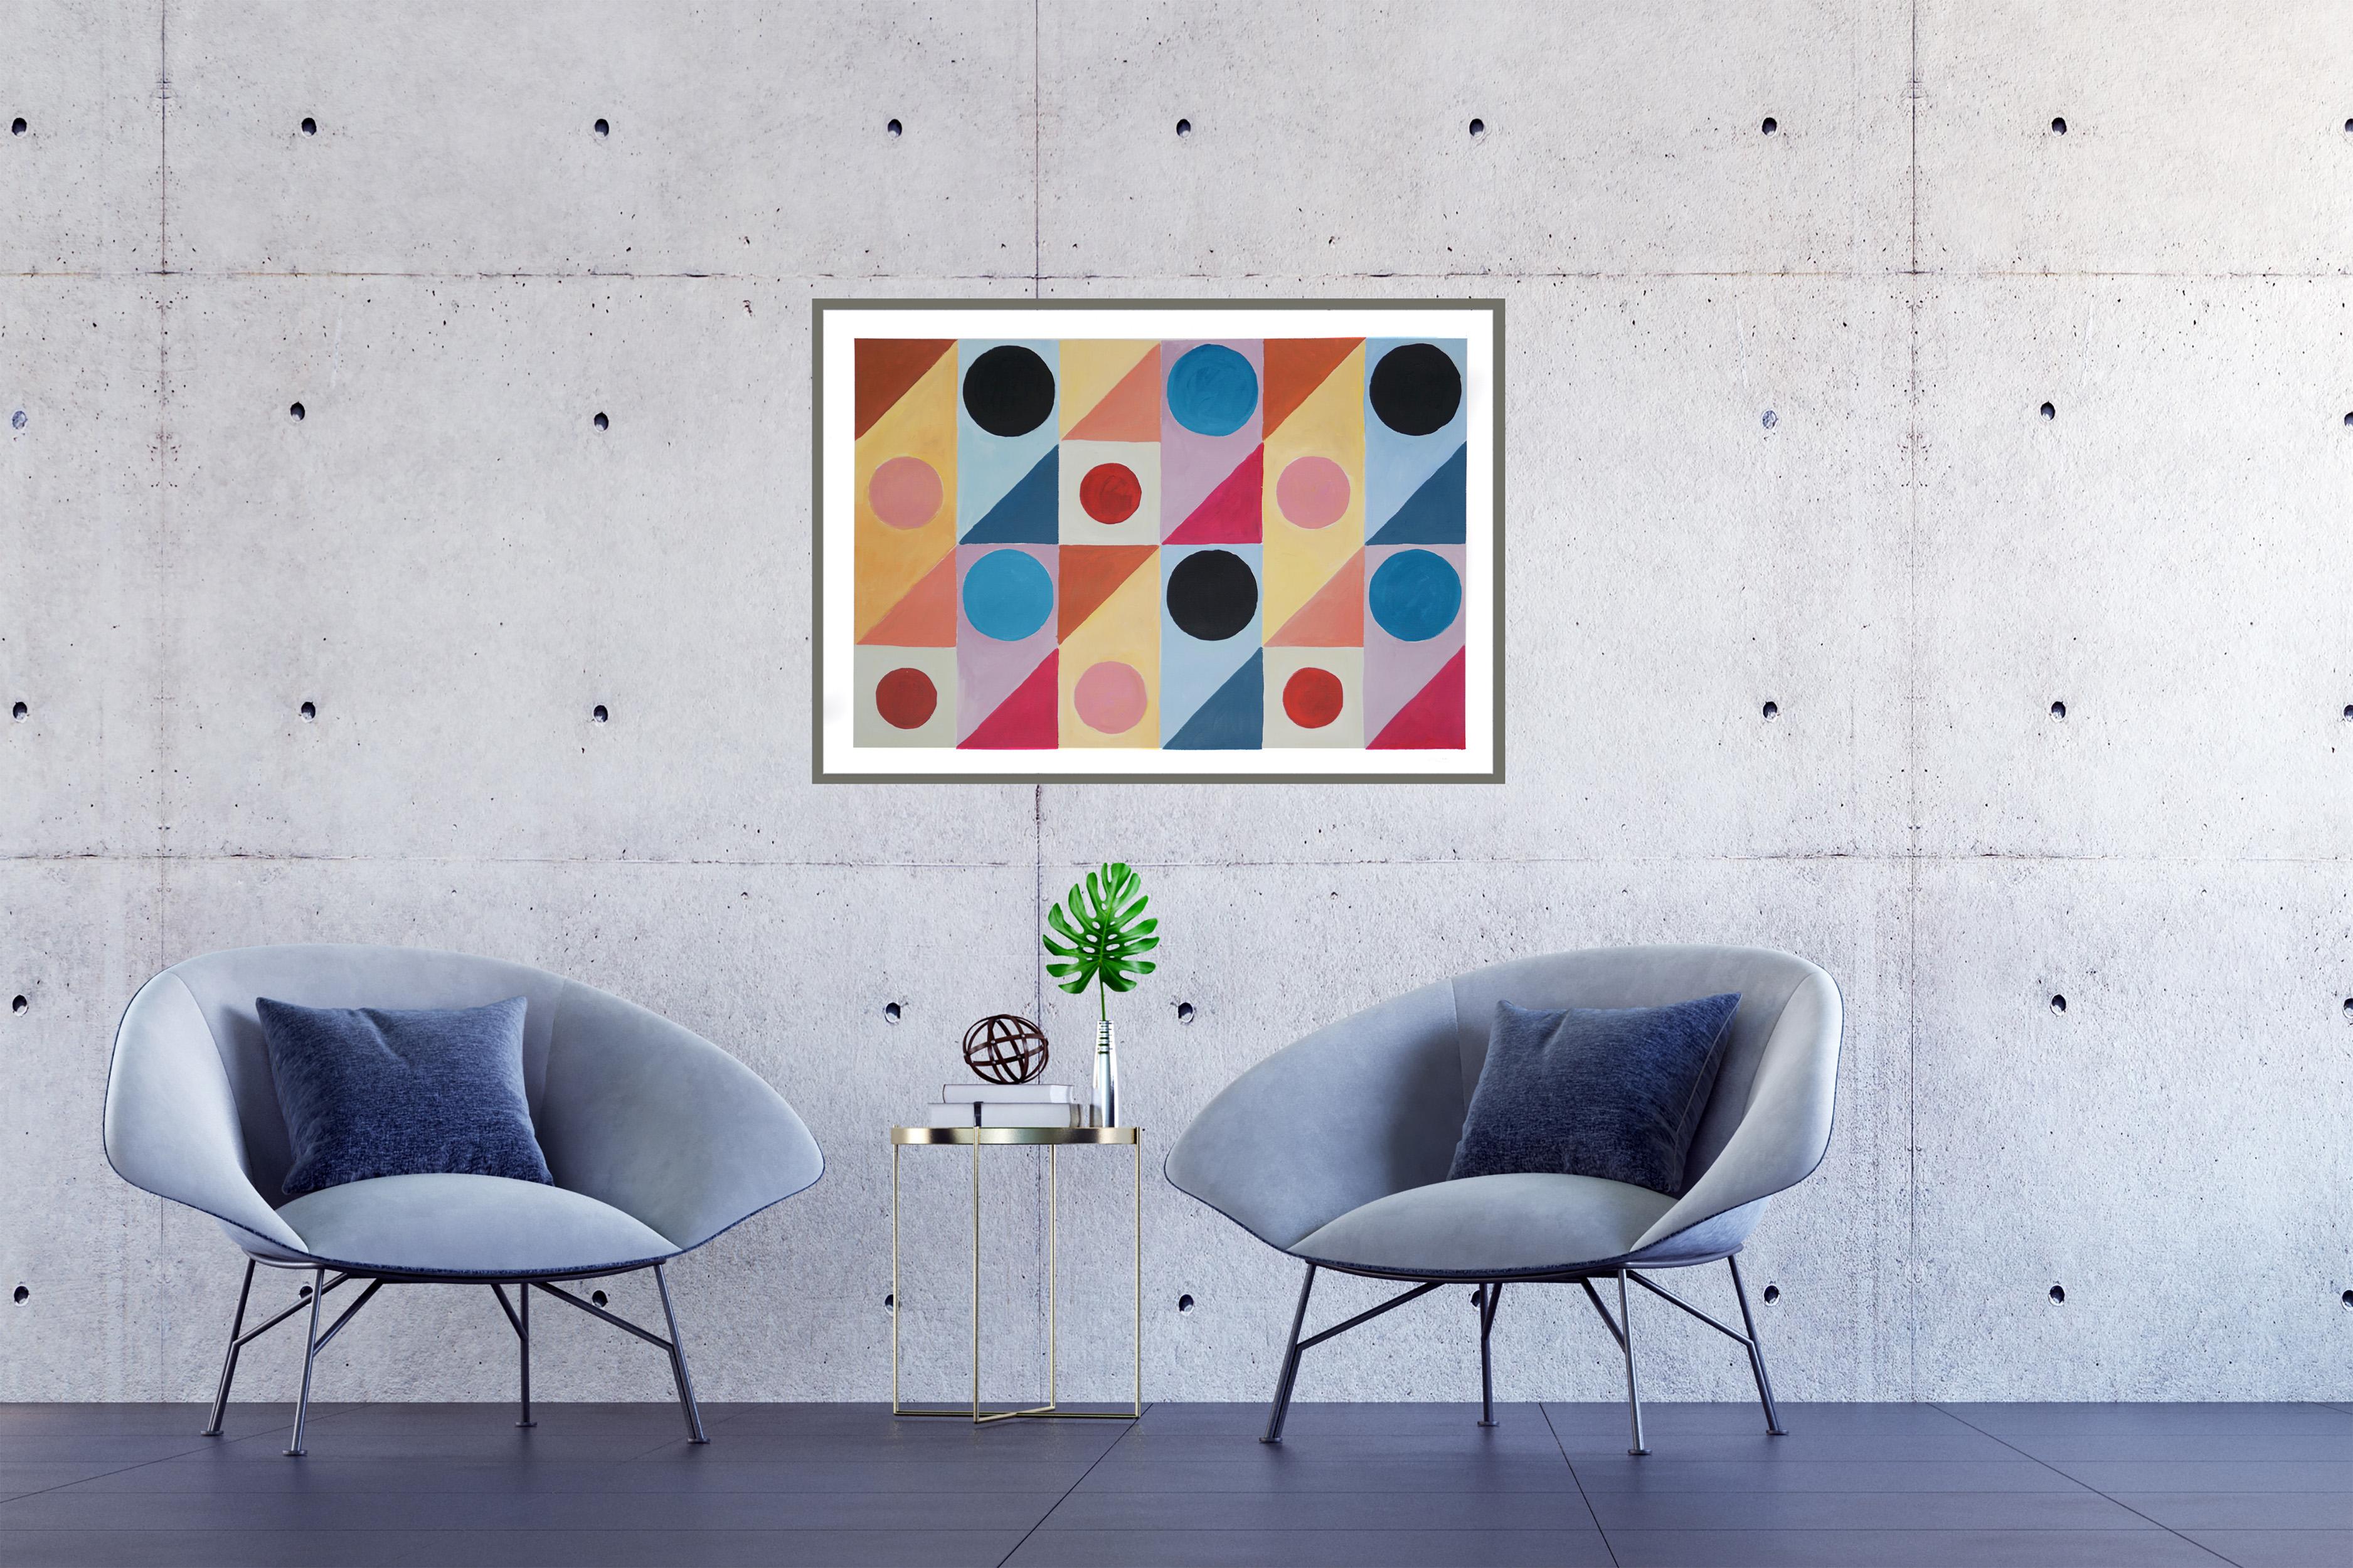 Cette série de peintures de Natalia Roman s'inspire des formes géométriques et minimalistes et des peintures du début du modernisme, avec un accent particulier sur les formes Art déco des années 30, 40 et 50. Les combinaisons de couleurs subtiles